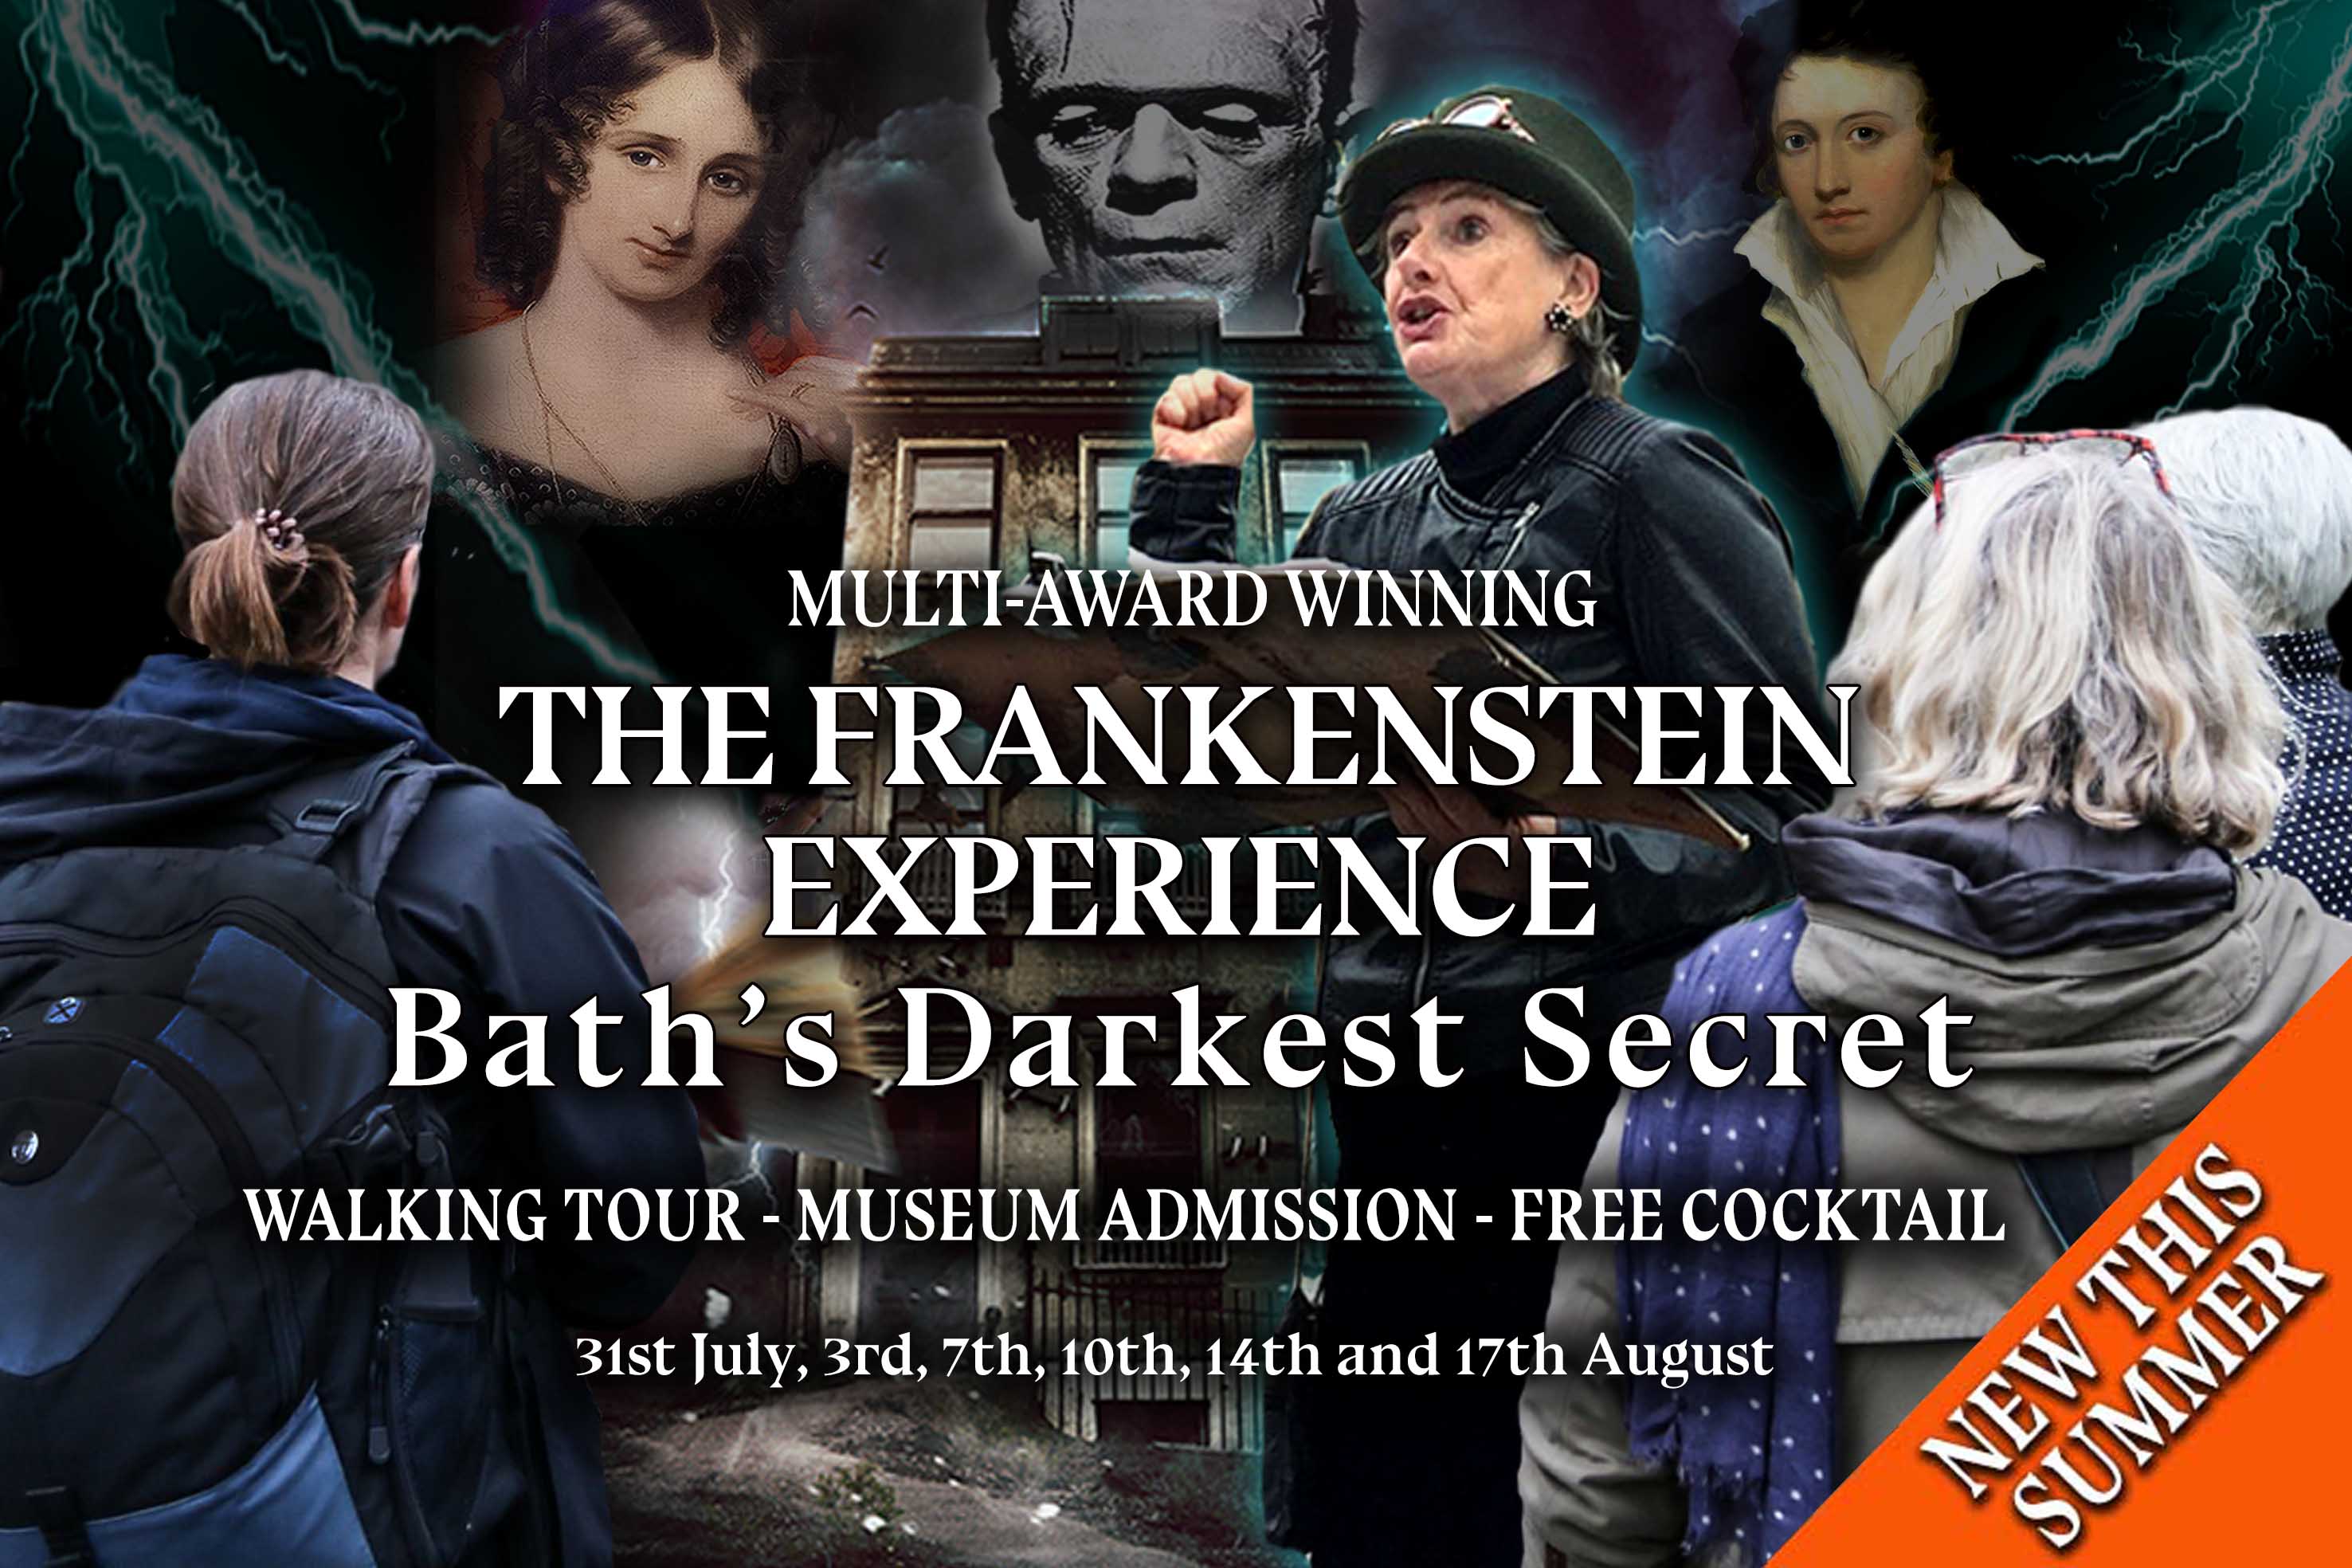 The Frankenstein Experience - Bath's Darkest Secret